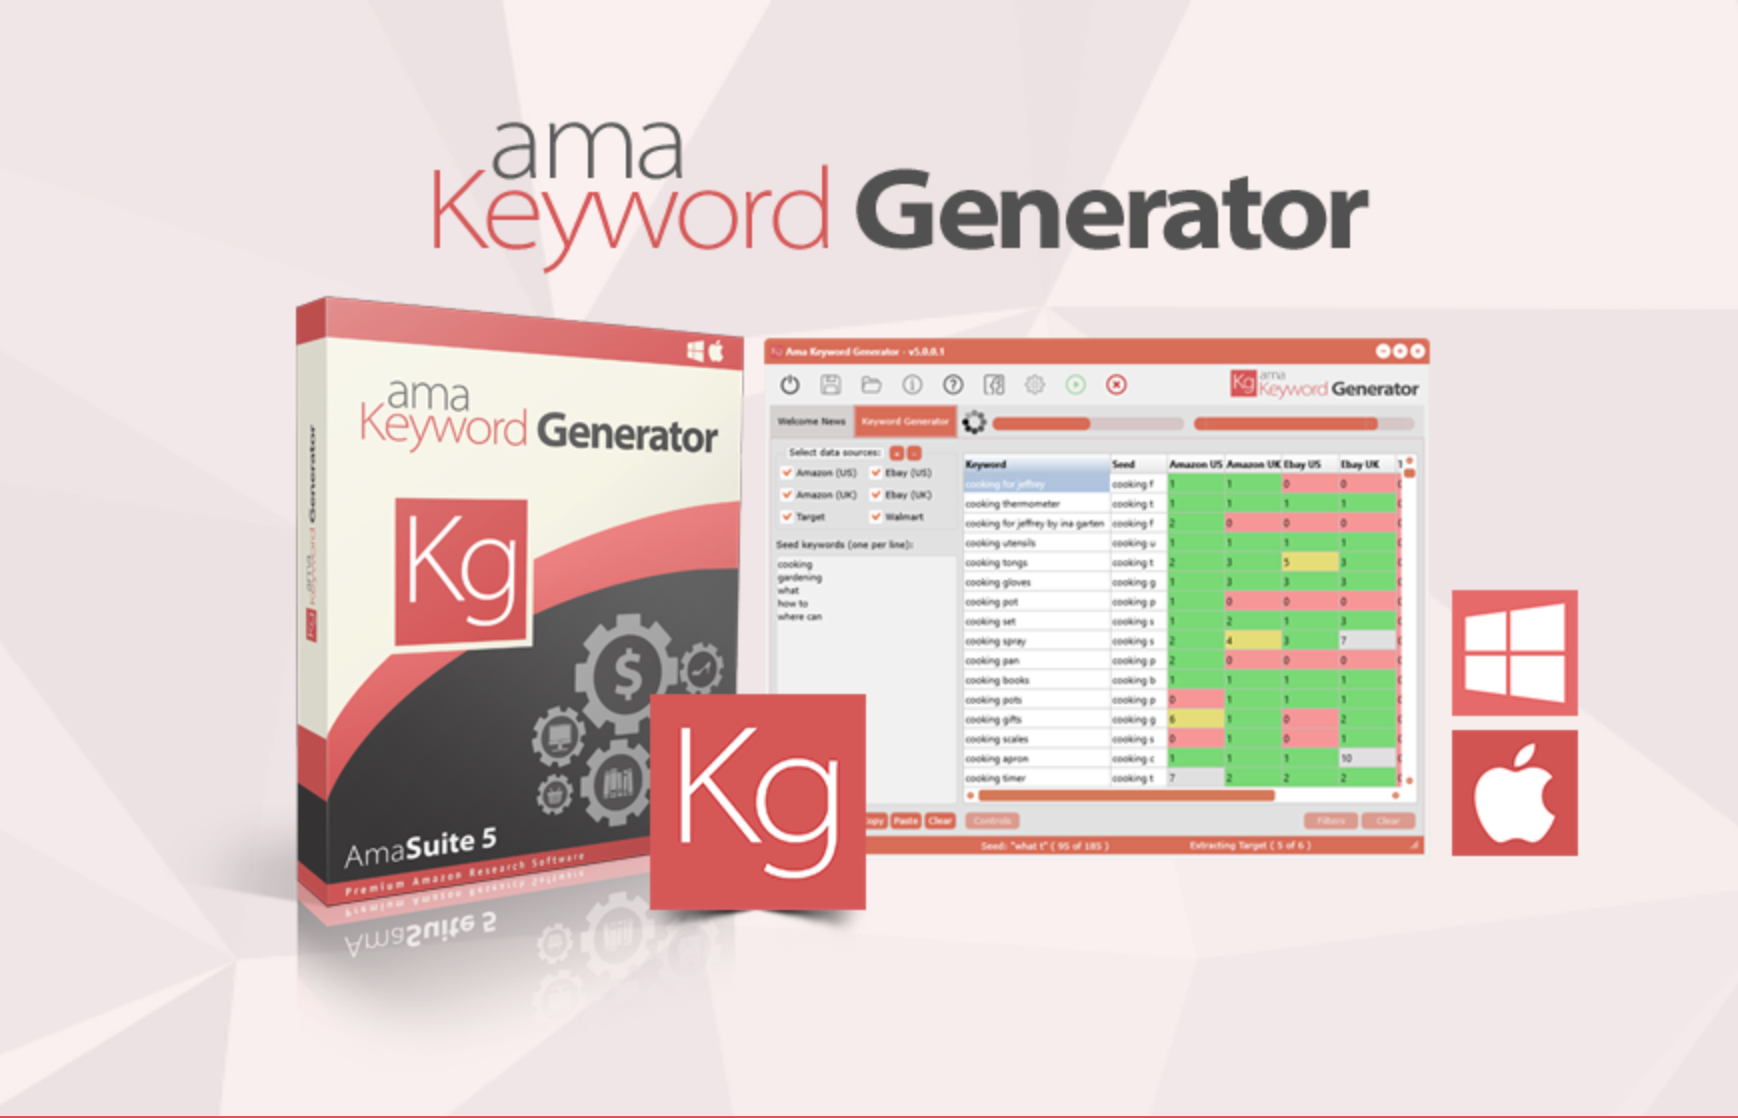 AmaSuite- AMA Keyword Generator